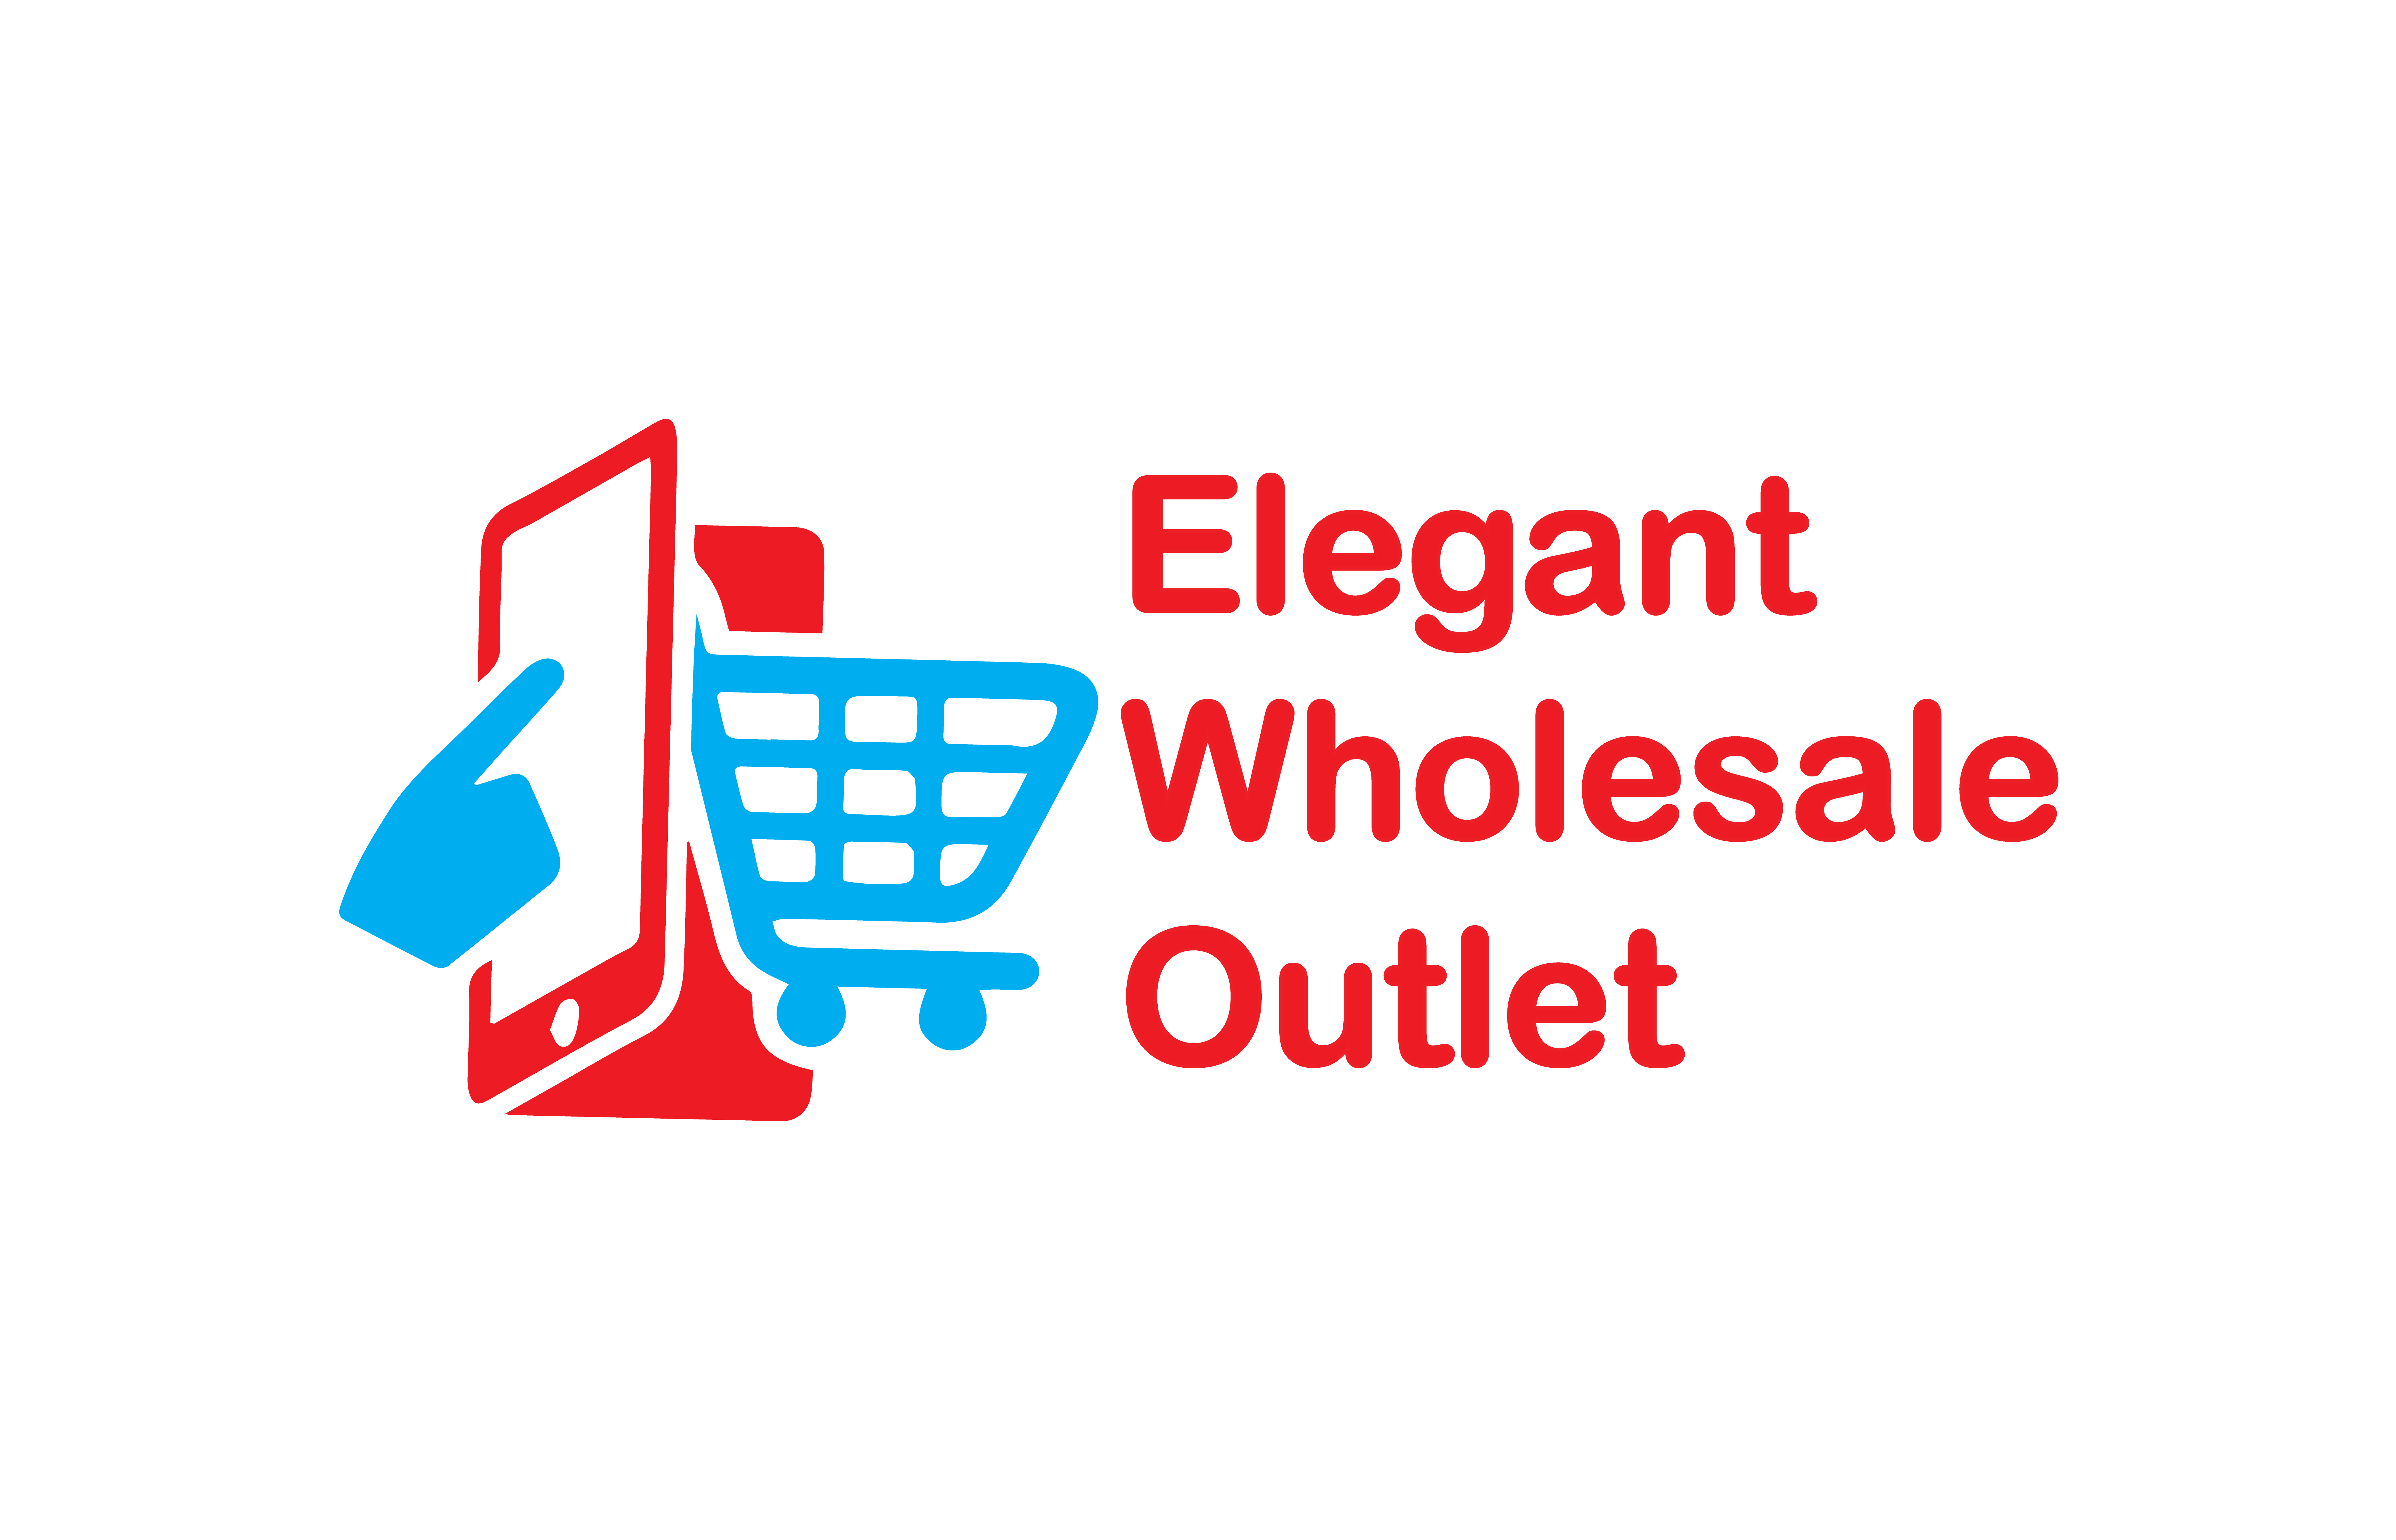 Elegant Wholesale Outlet